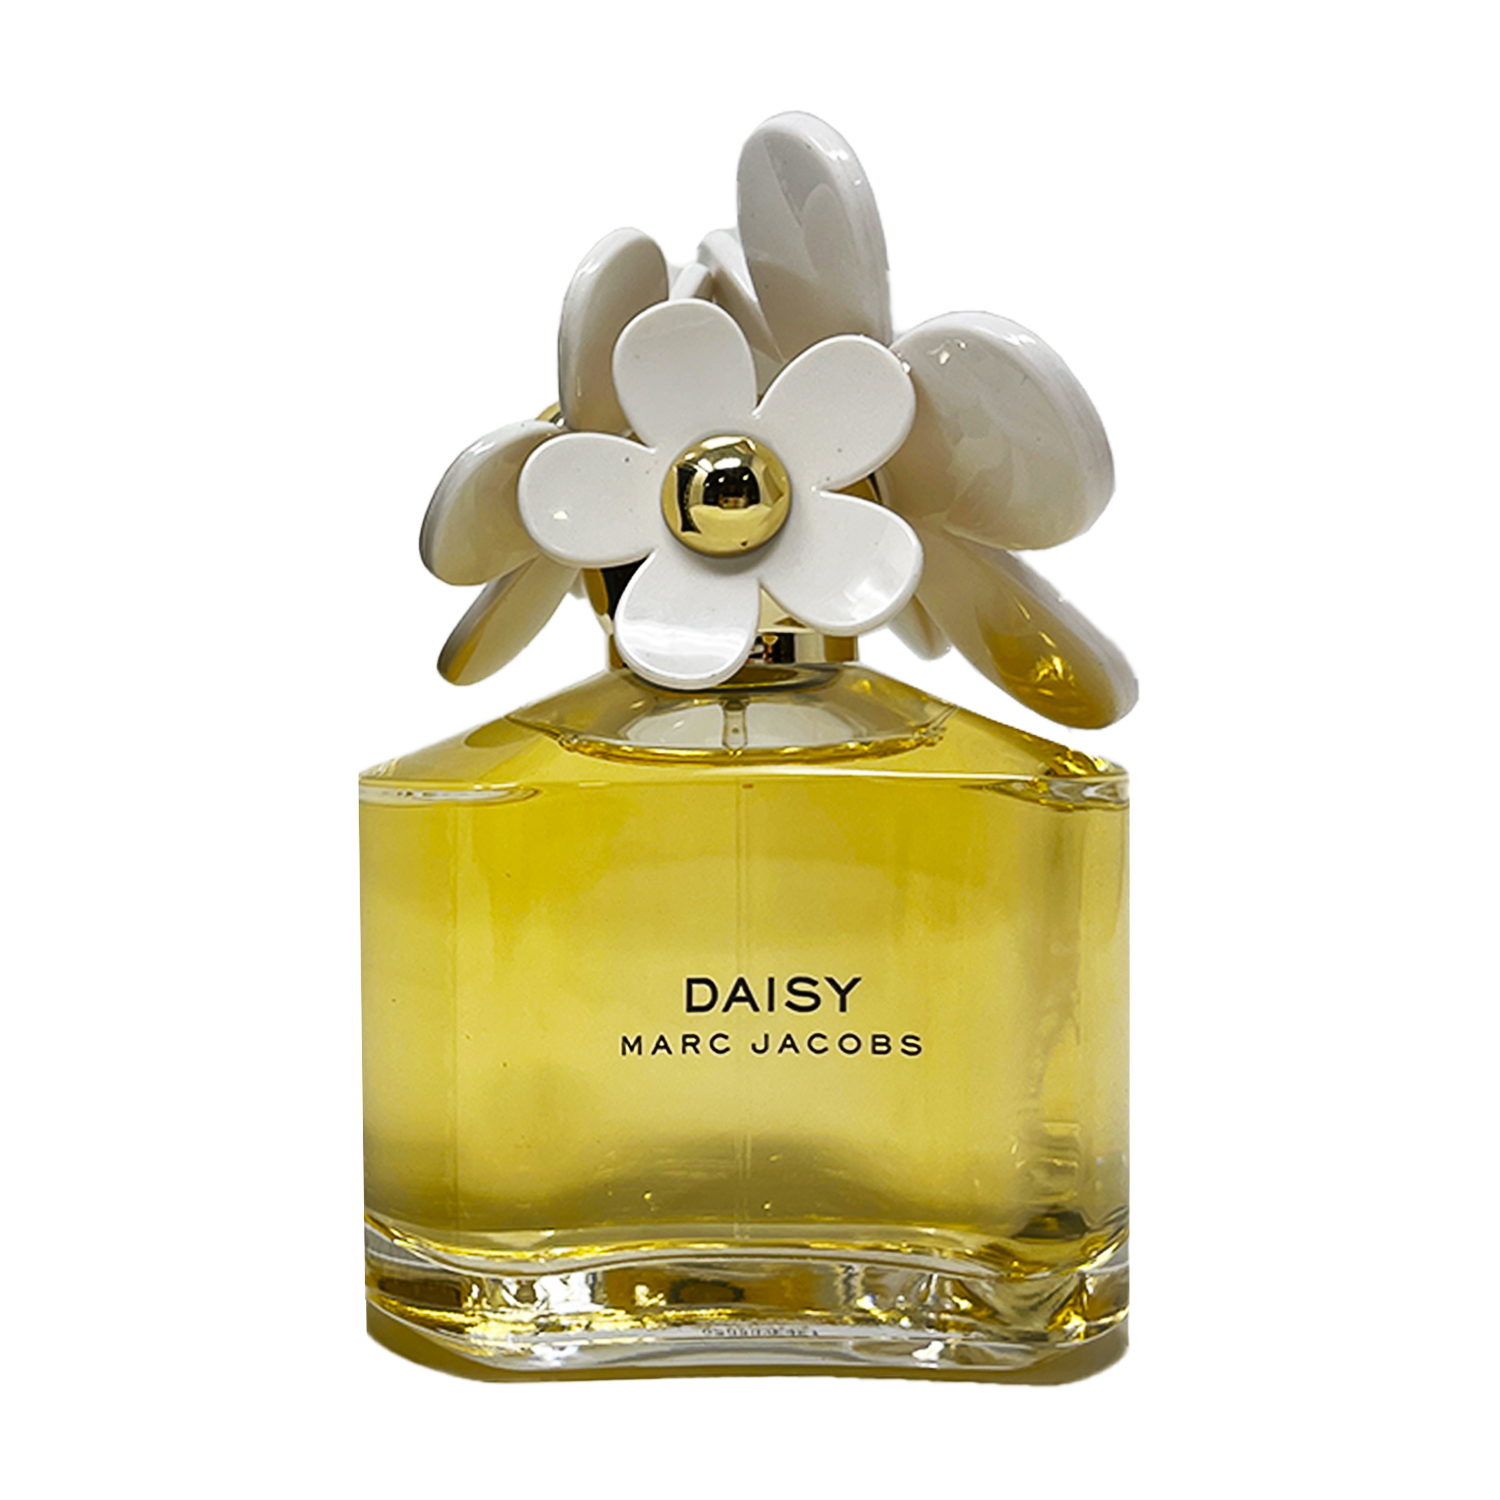 Marc Jacobs Daisy Eau De Toilette, Perfume for Women, 3.4 oz - image 4 of 4